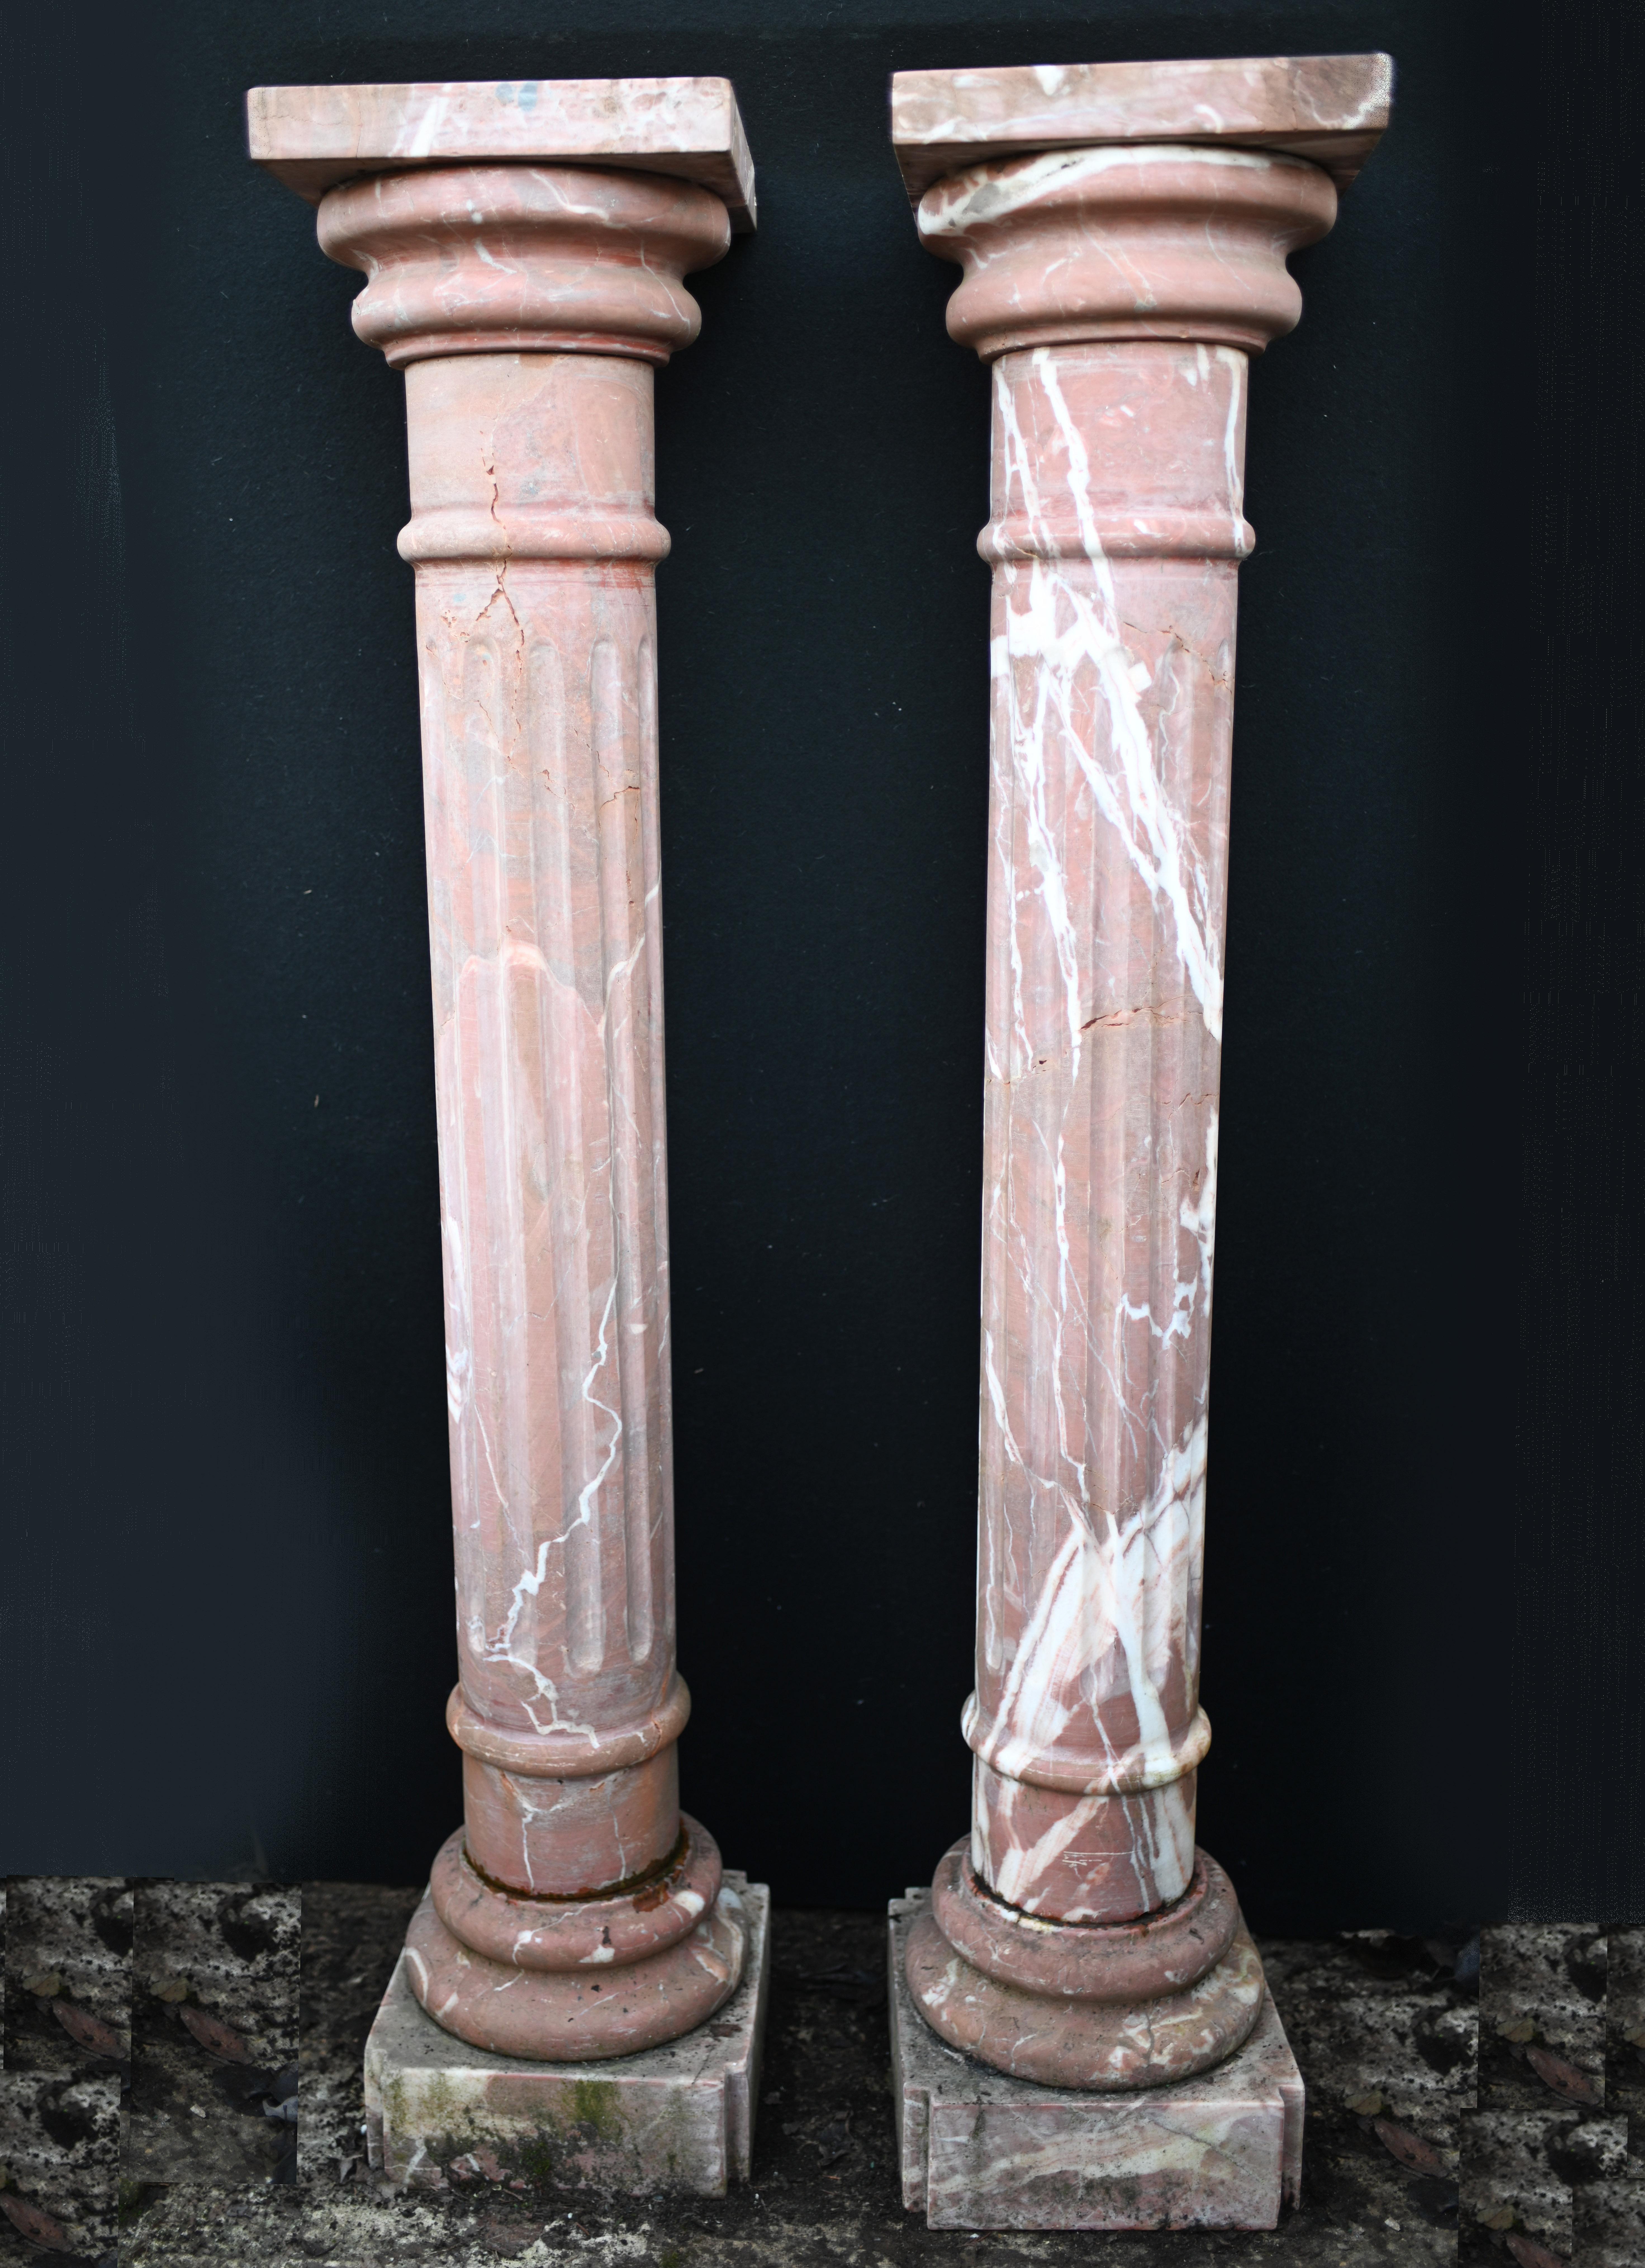 Paire de colonnes italiennes en marbre
Idéal pour présenter des pièces décoratives telles que des bustes ou des vases
Cannelure classique et belle coloration de la pierre
Peut vivre à l'intérieur ou à l'extérieur
Certains de nos articles sont